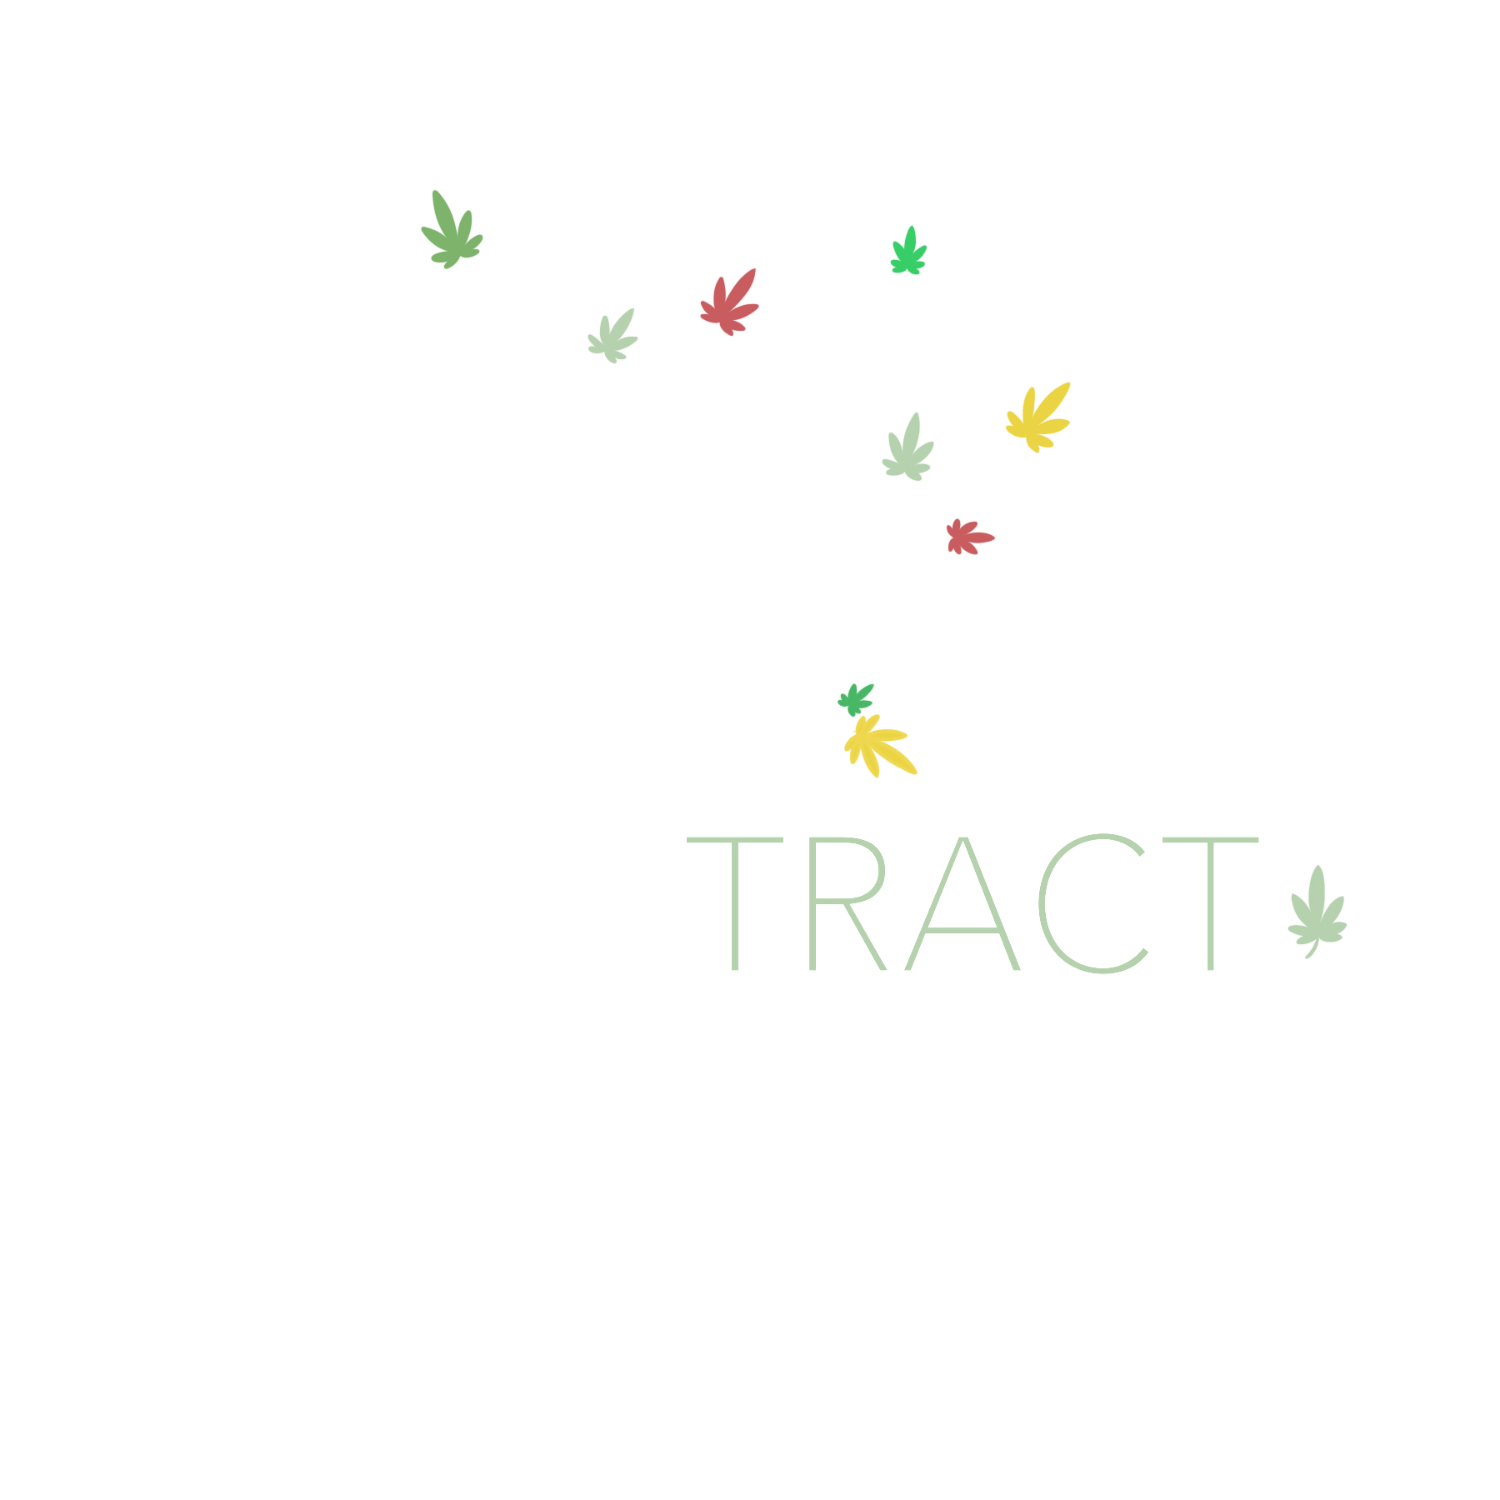 X-Tract Vermont